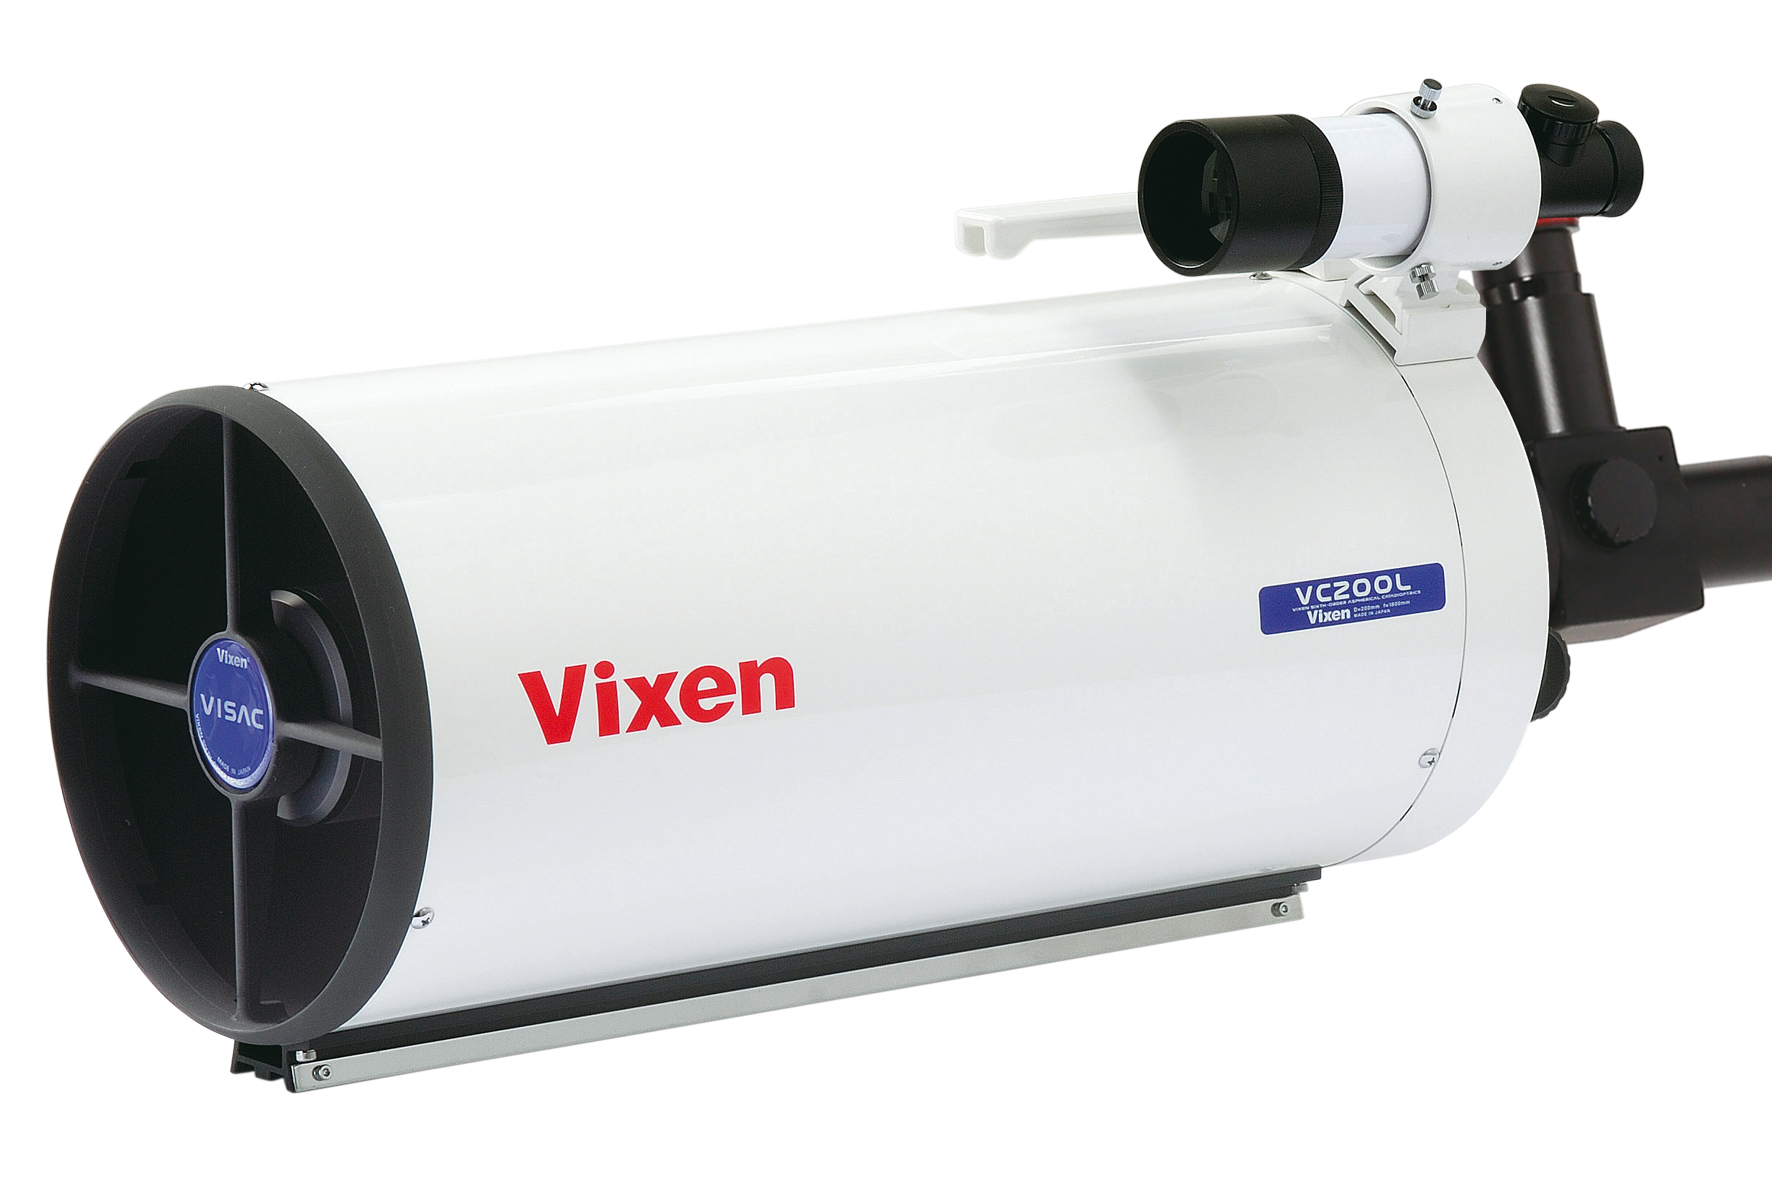 Conjunto de telescopio Vixen SX2WL VC200L